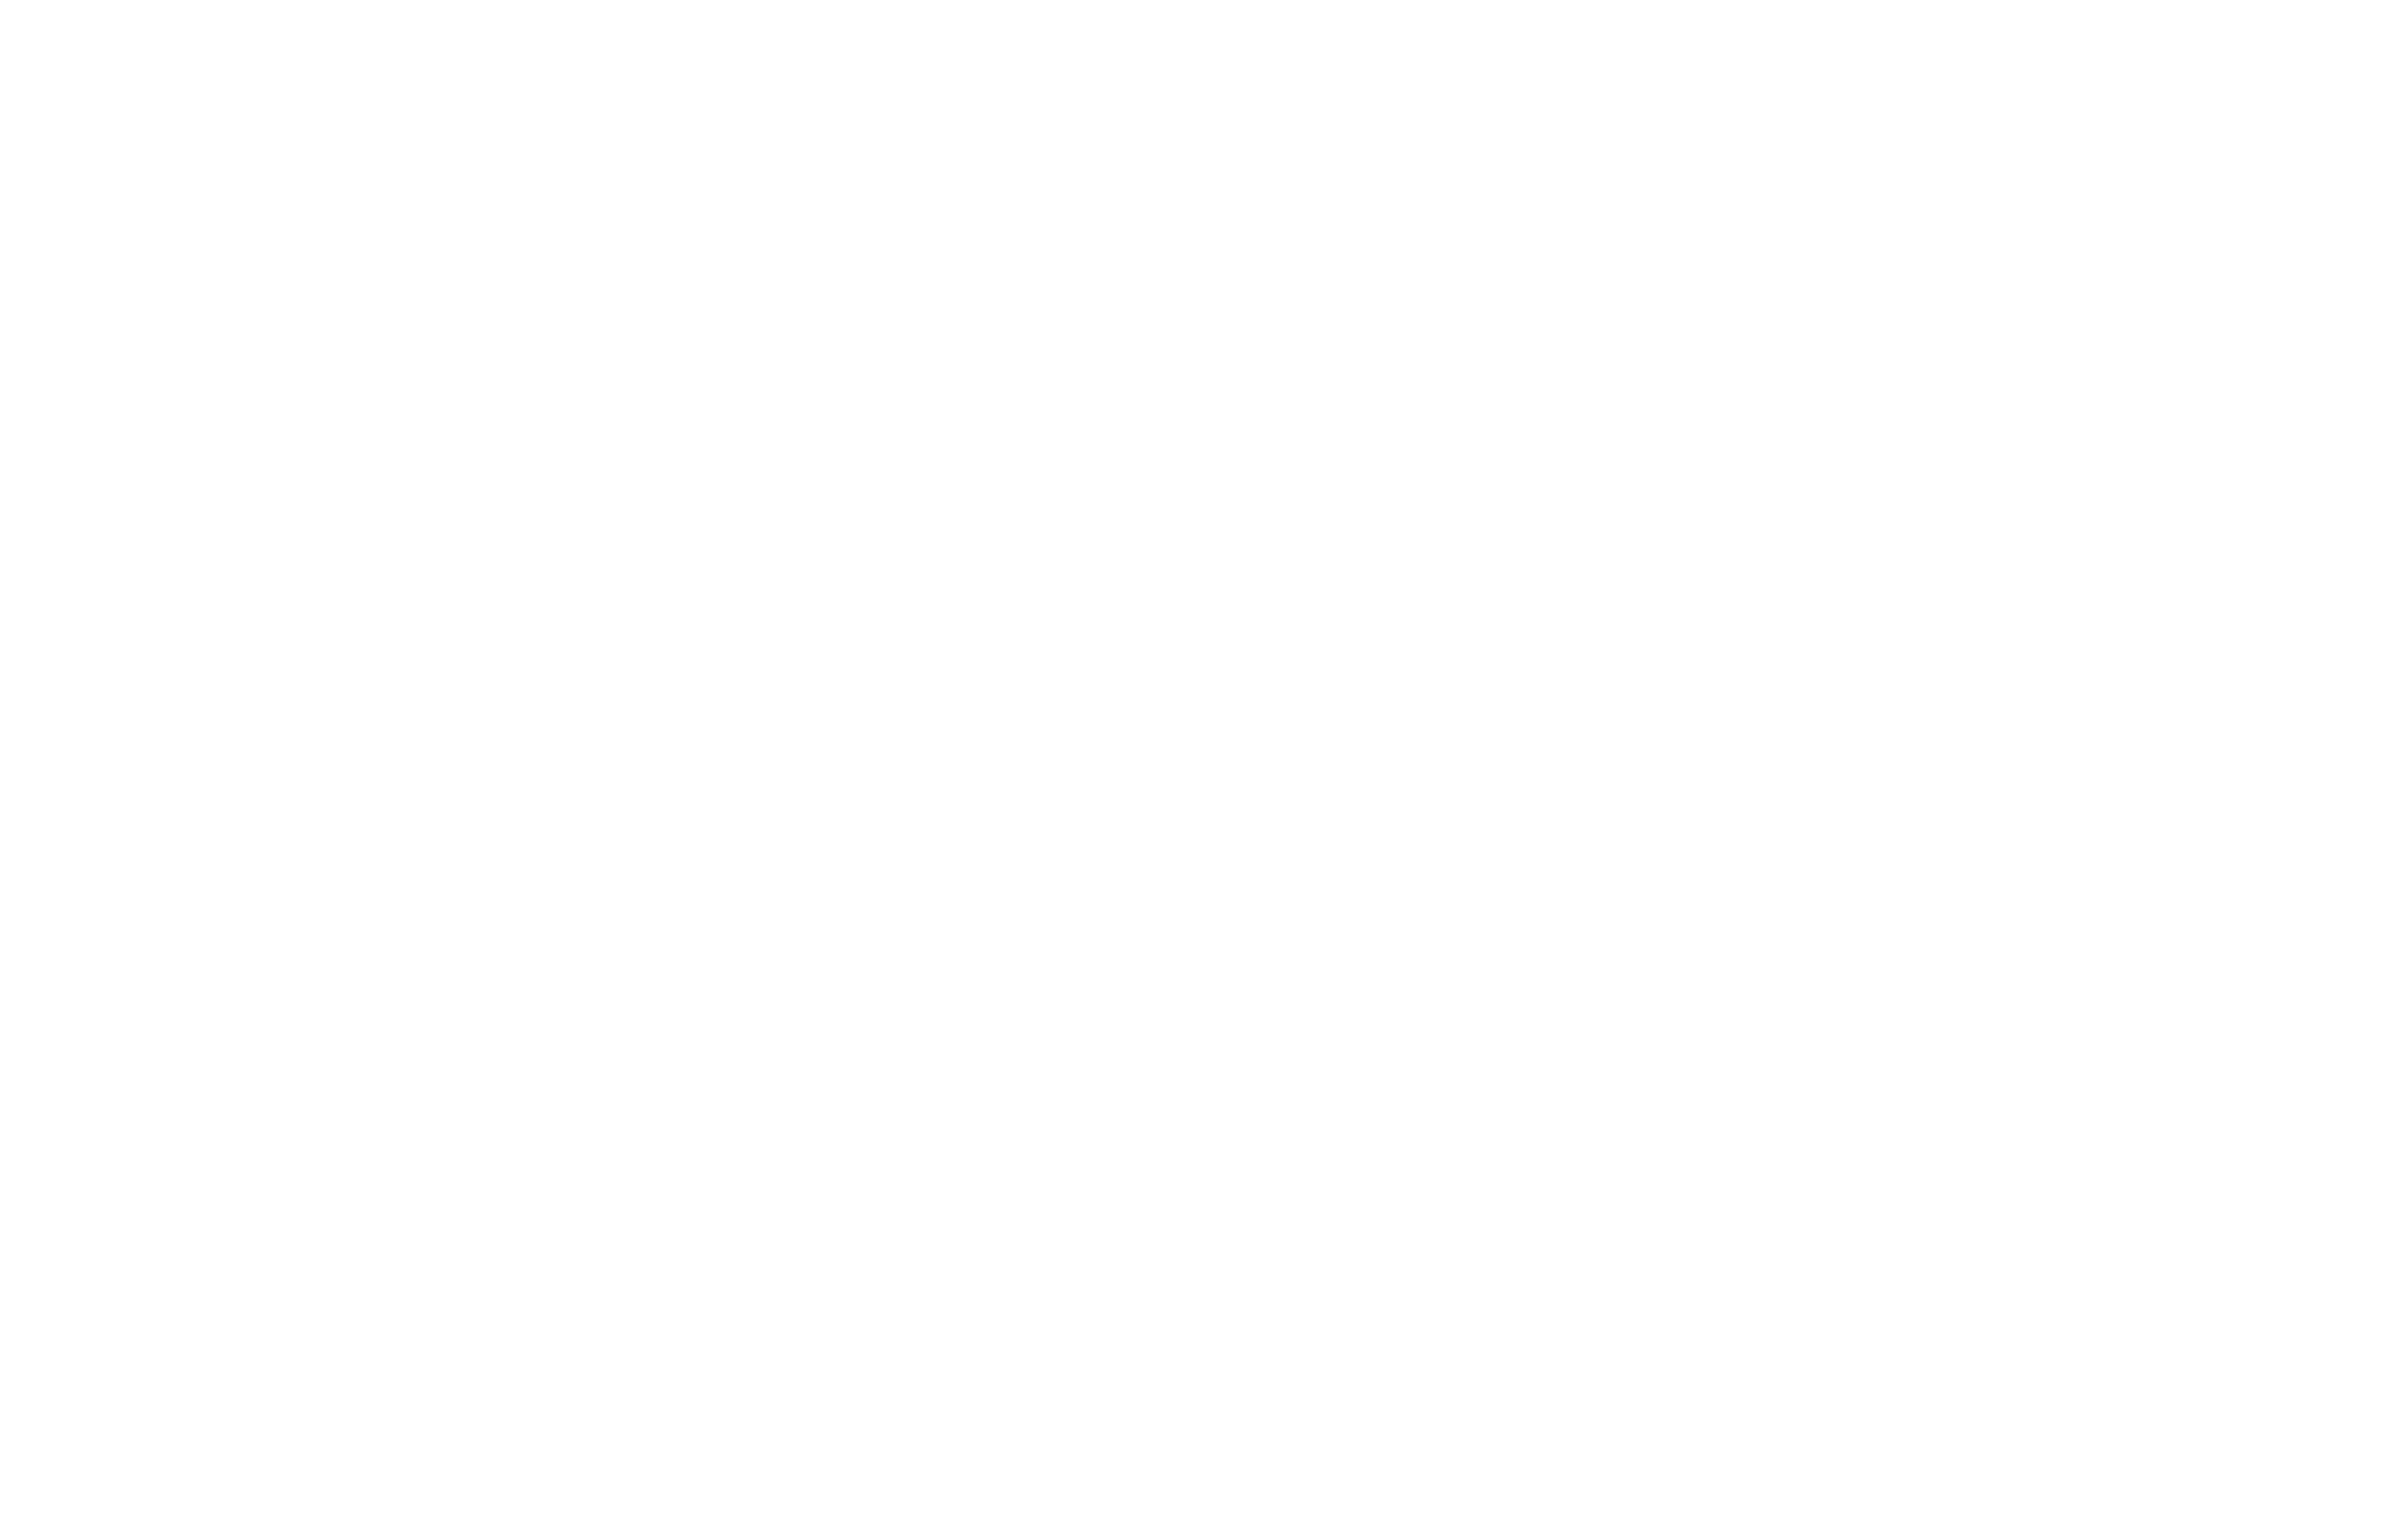 Mars Resort